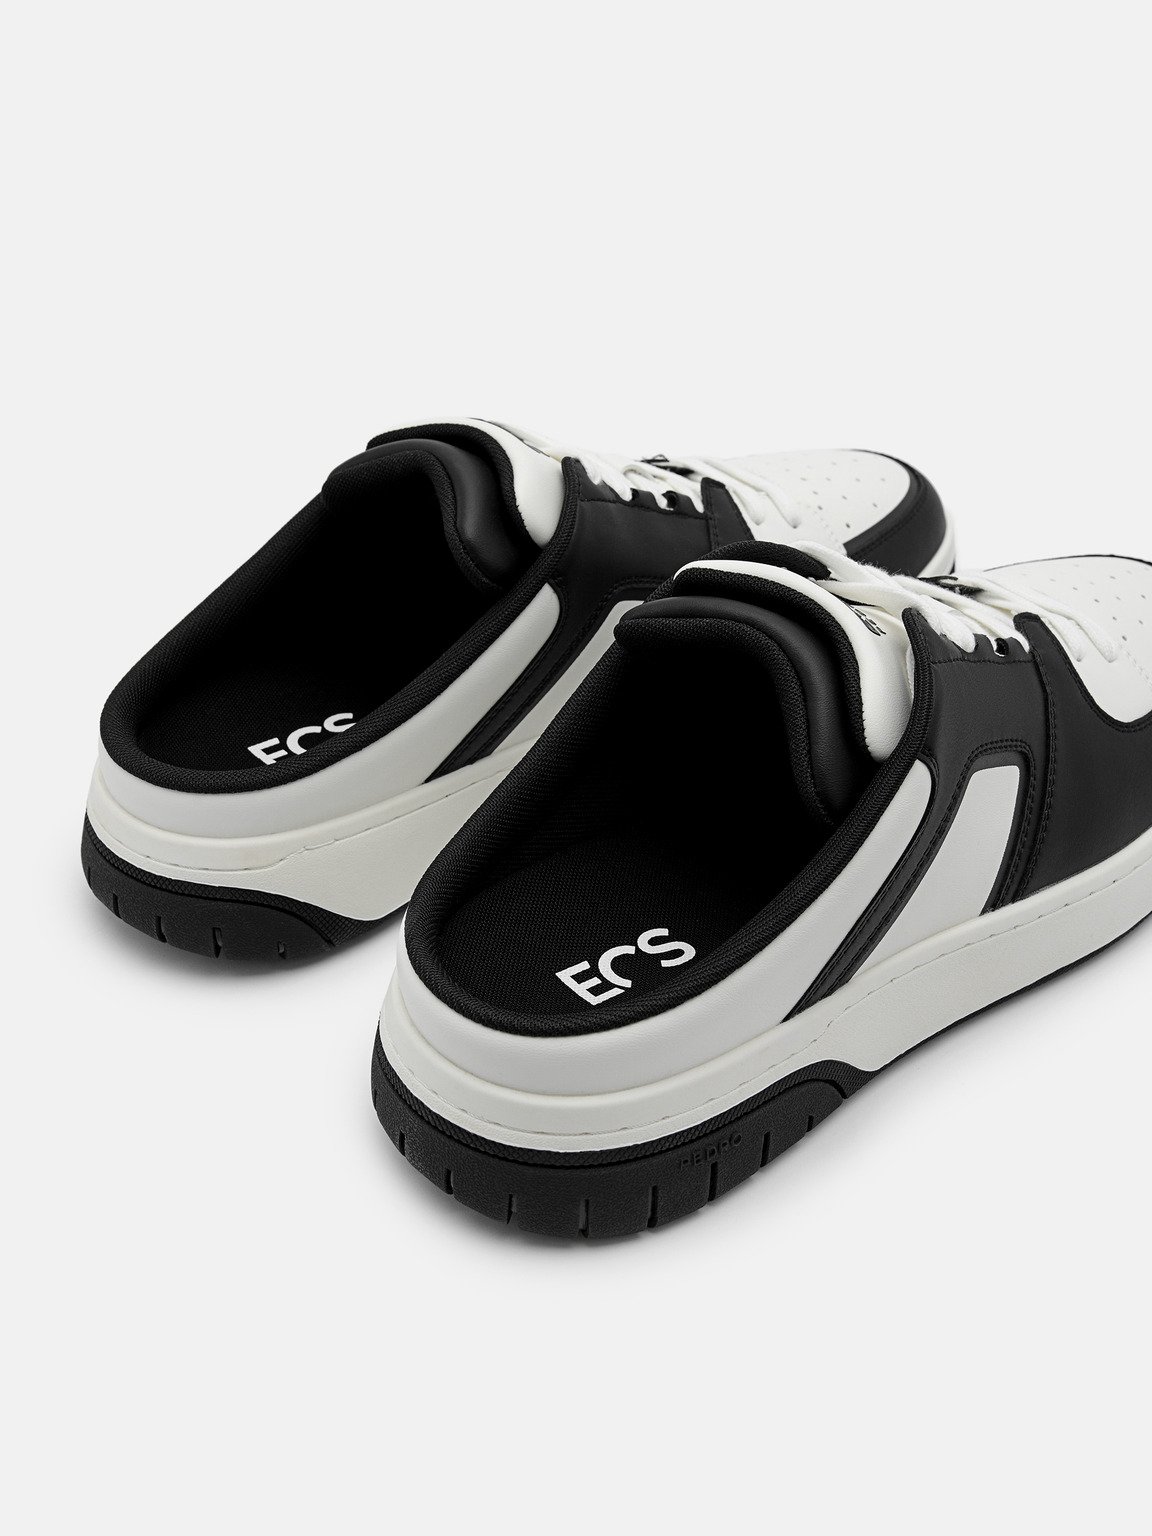 男士EOS一腳蹬運動鞋, 黑色